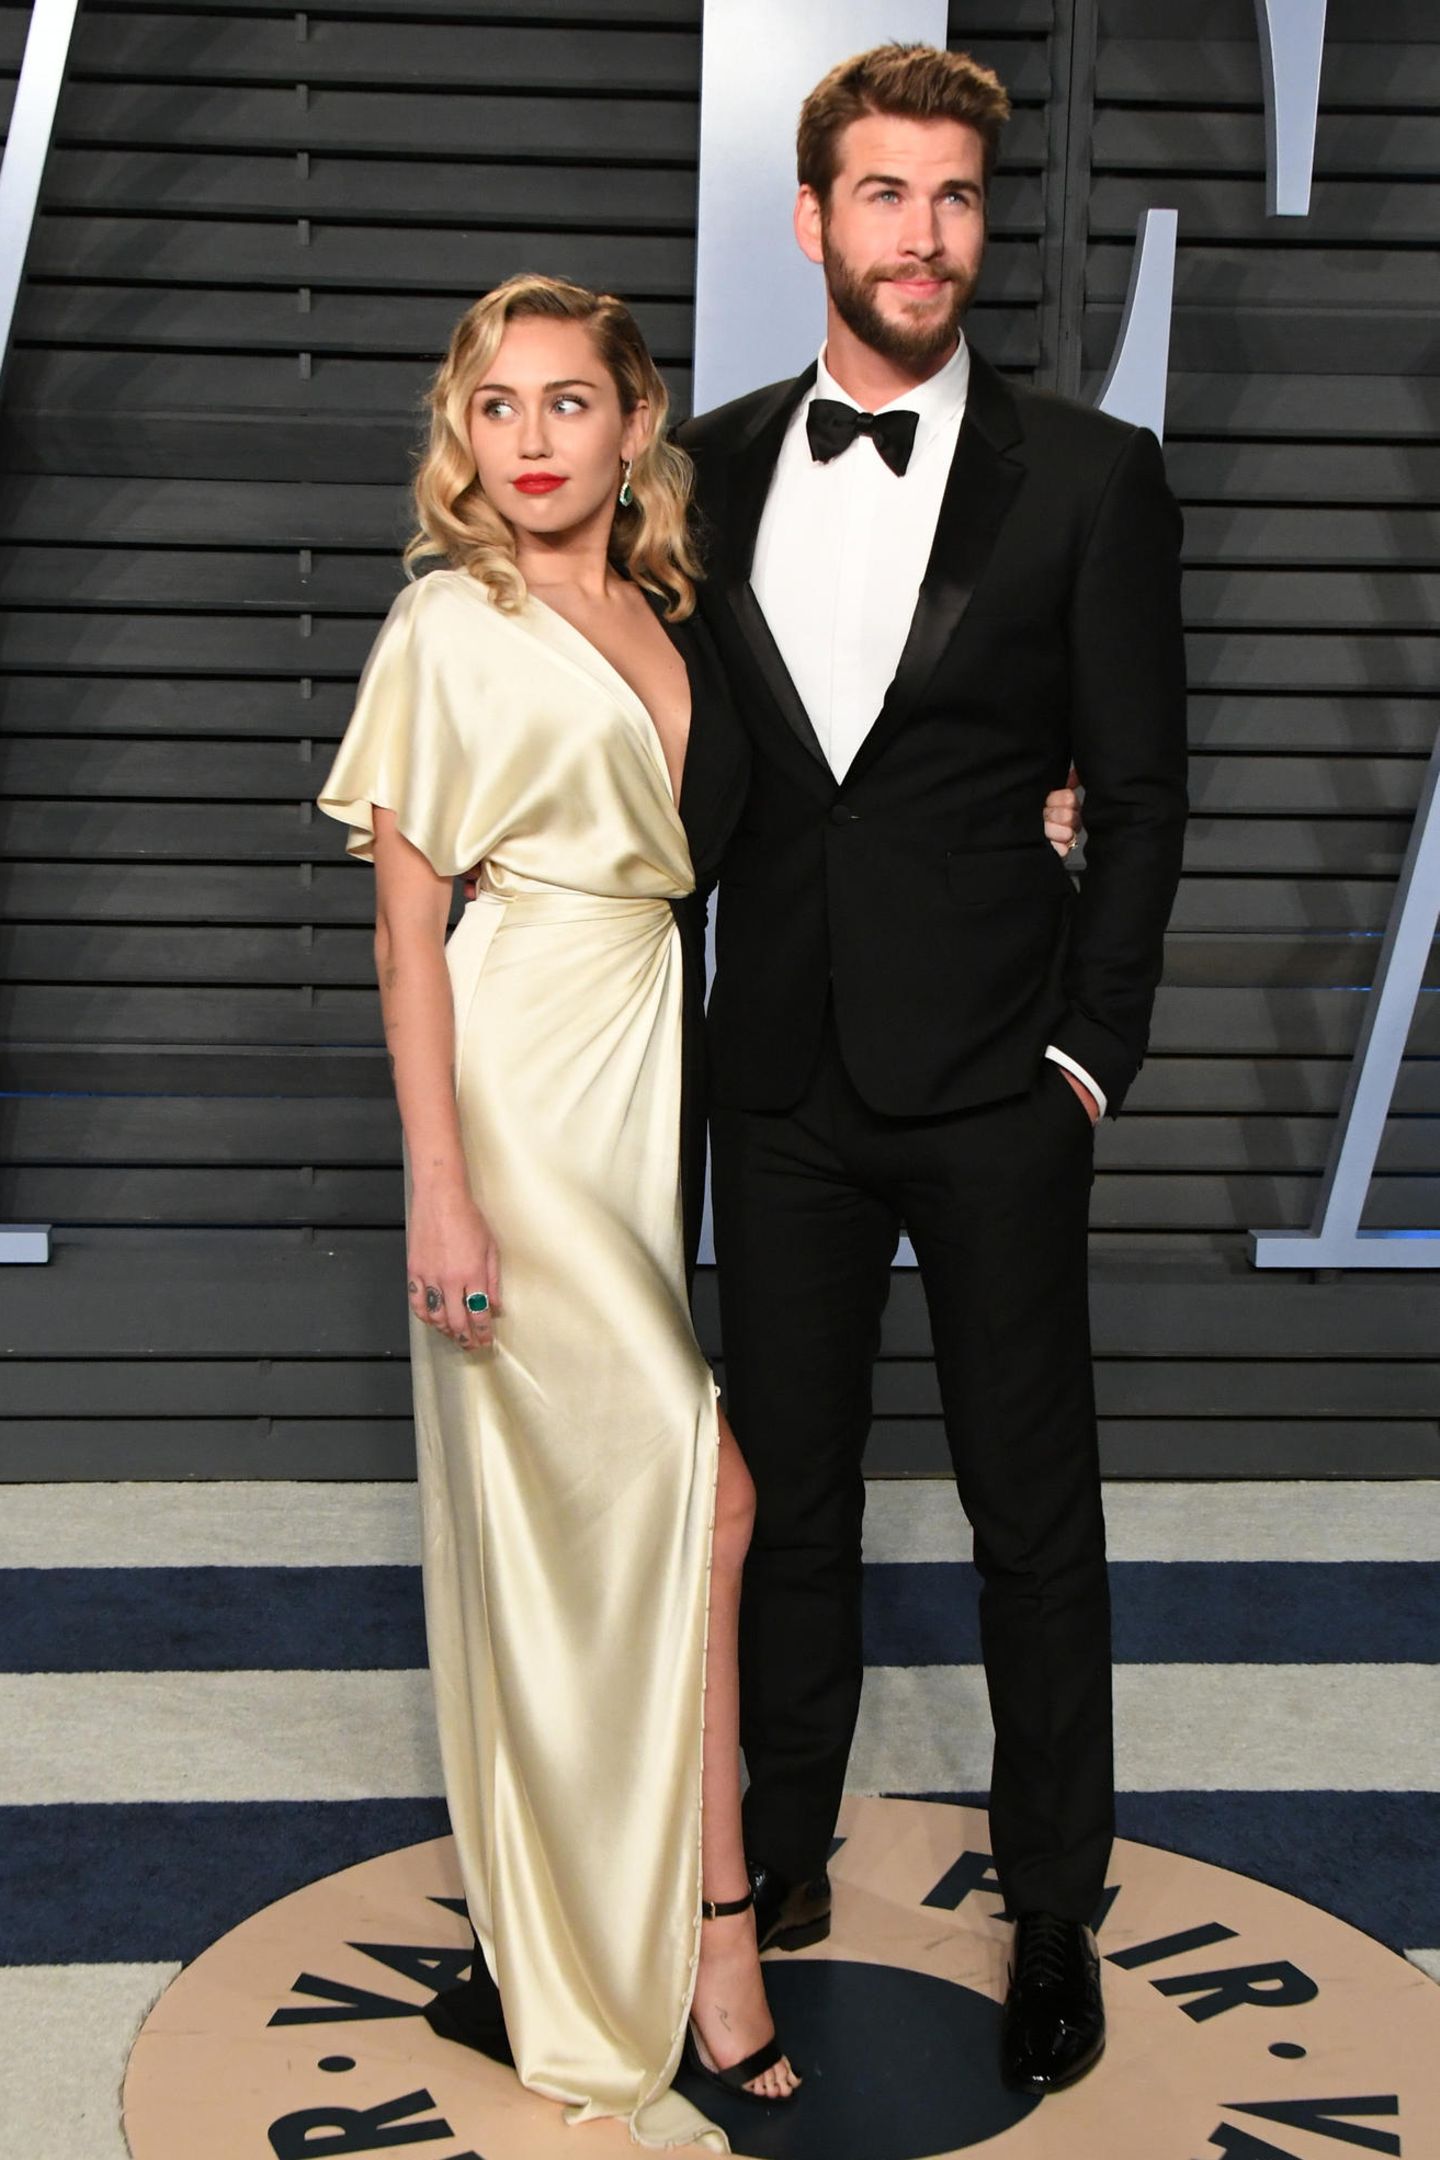 Gut ein Jahr zuvor gehören Miley Cyrus und Liam Hemsworth zu den "Best Dressed"-Pärchen auf dem roten Teppich, als sie zu der Oscarsparty der "Vanity Fair" gehen. Alle lieben Mileys Robe von Prabal Gurung.